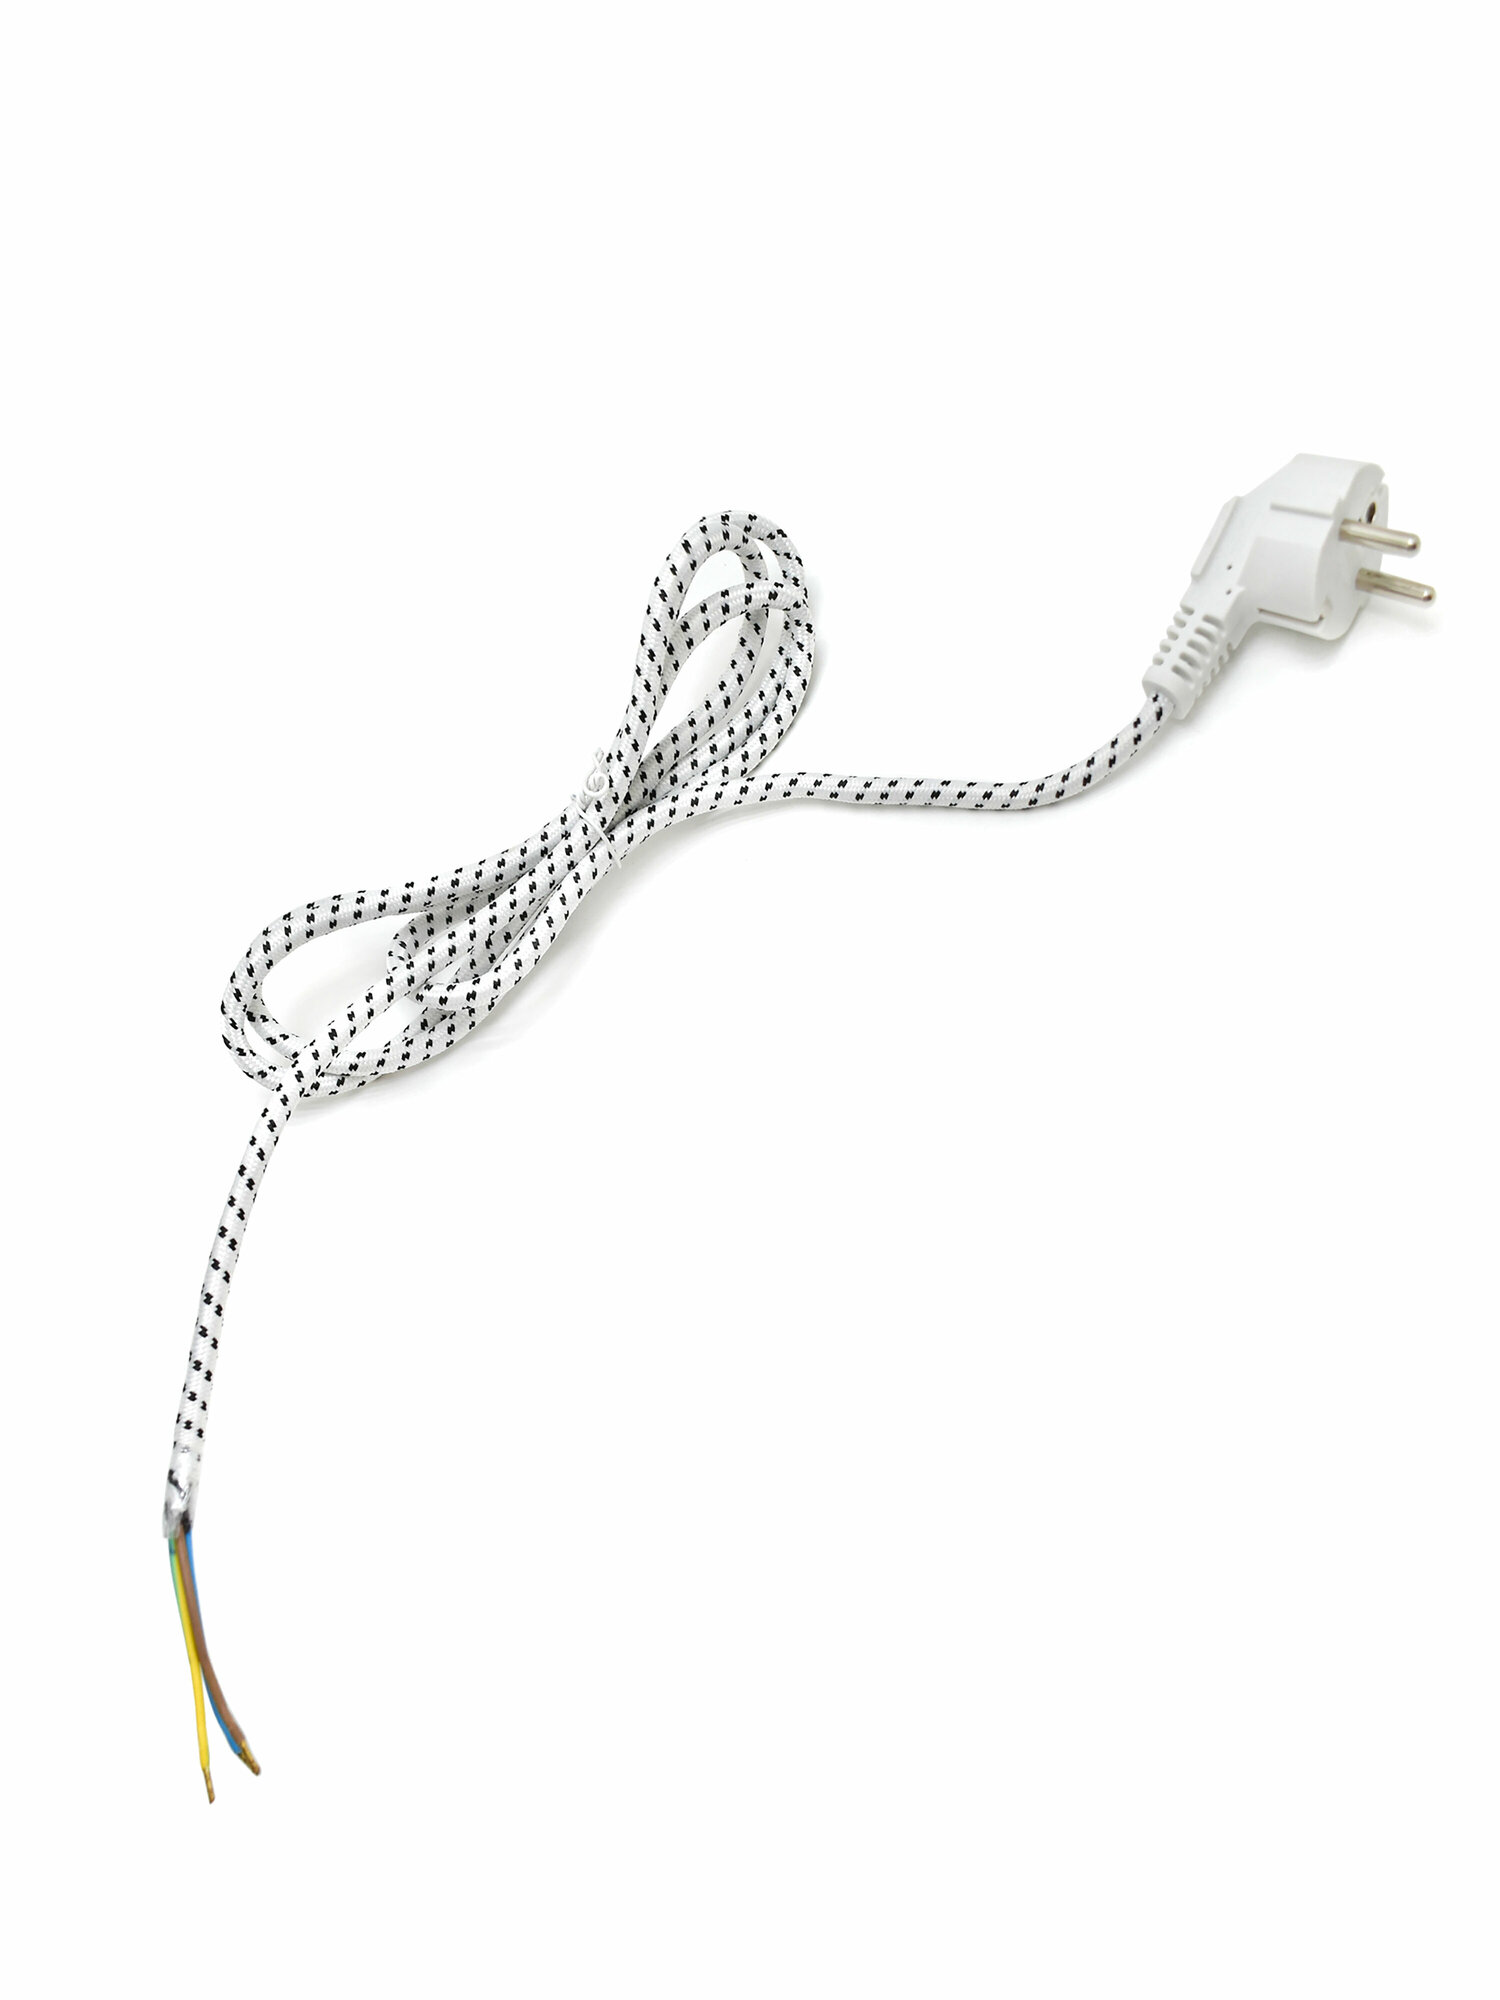 Сетевой шнур для утюга, длина 180см, тканевая оплетка